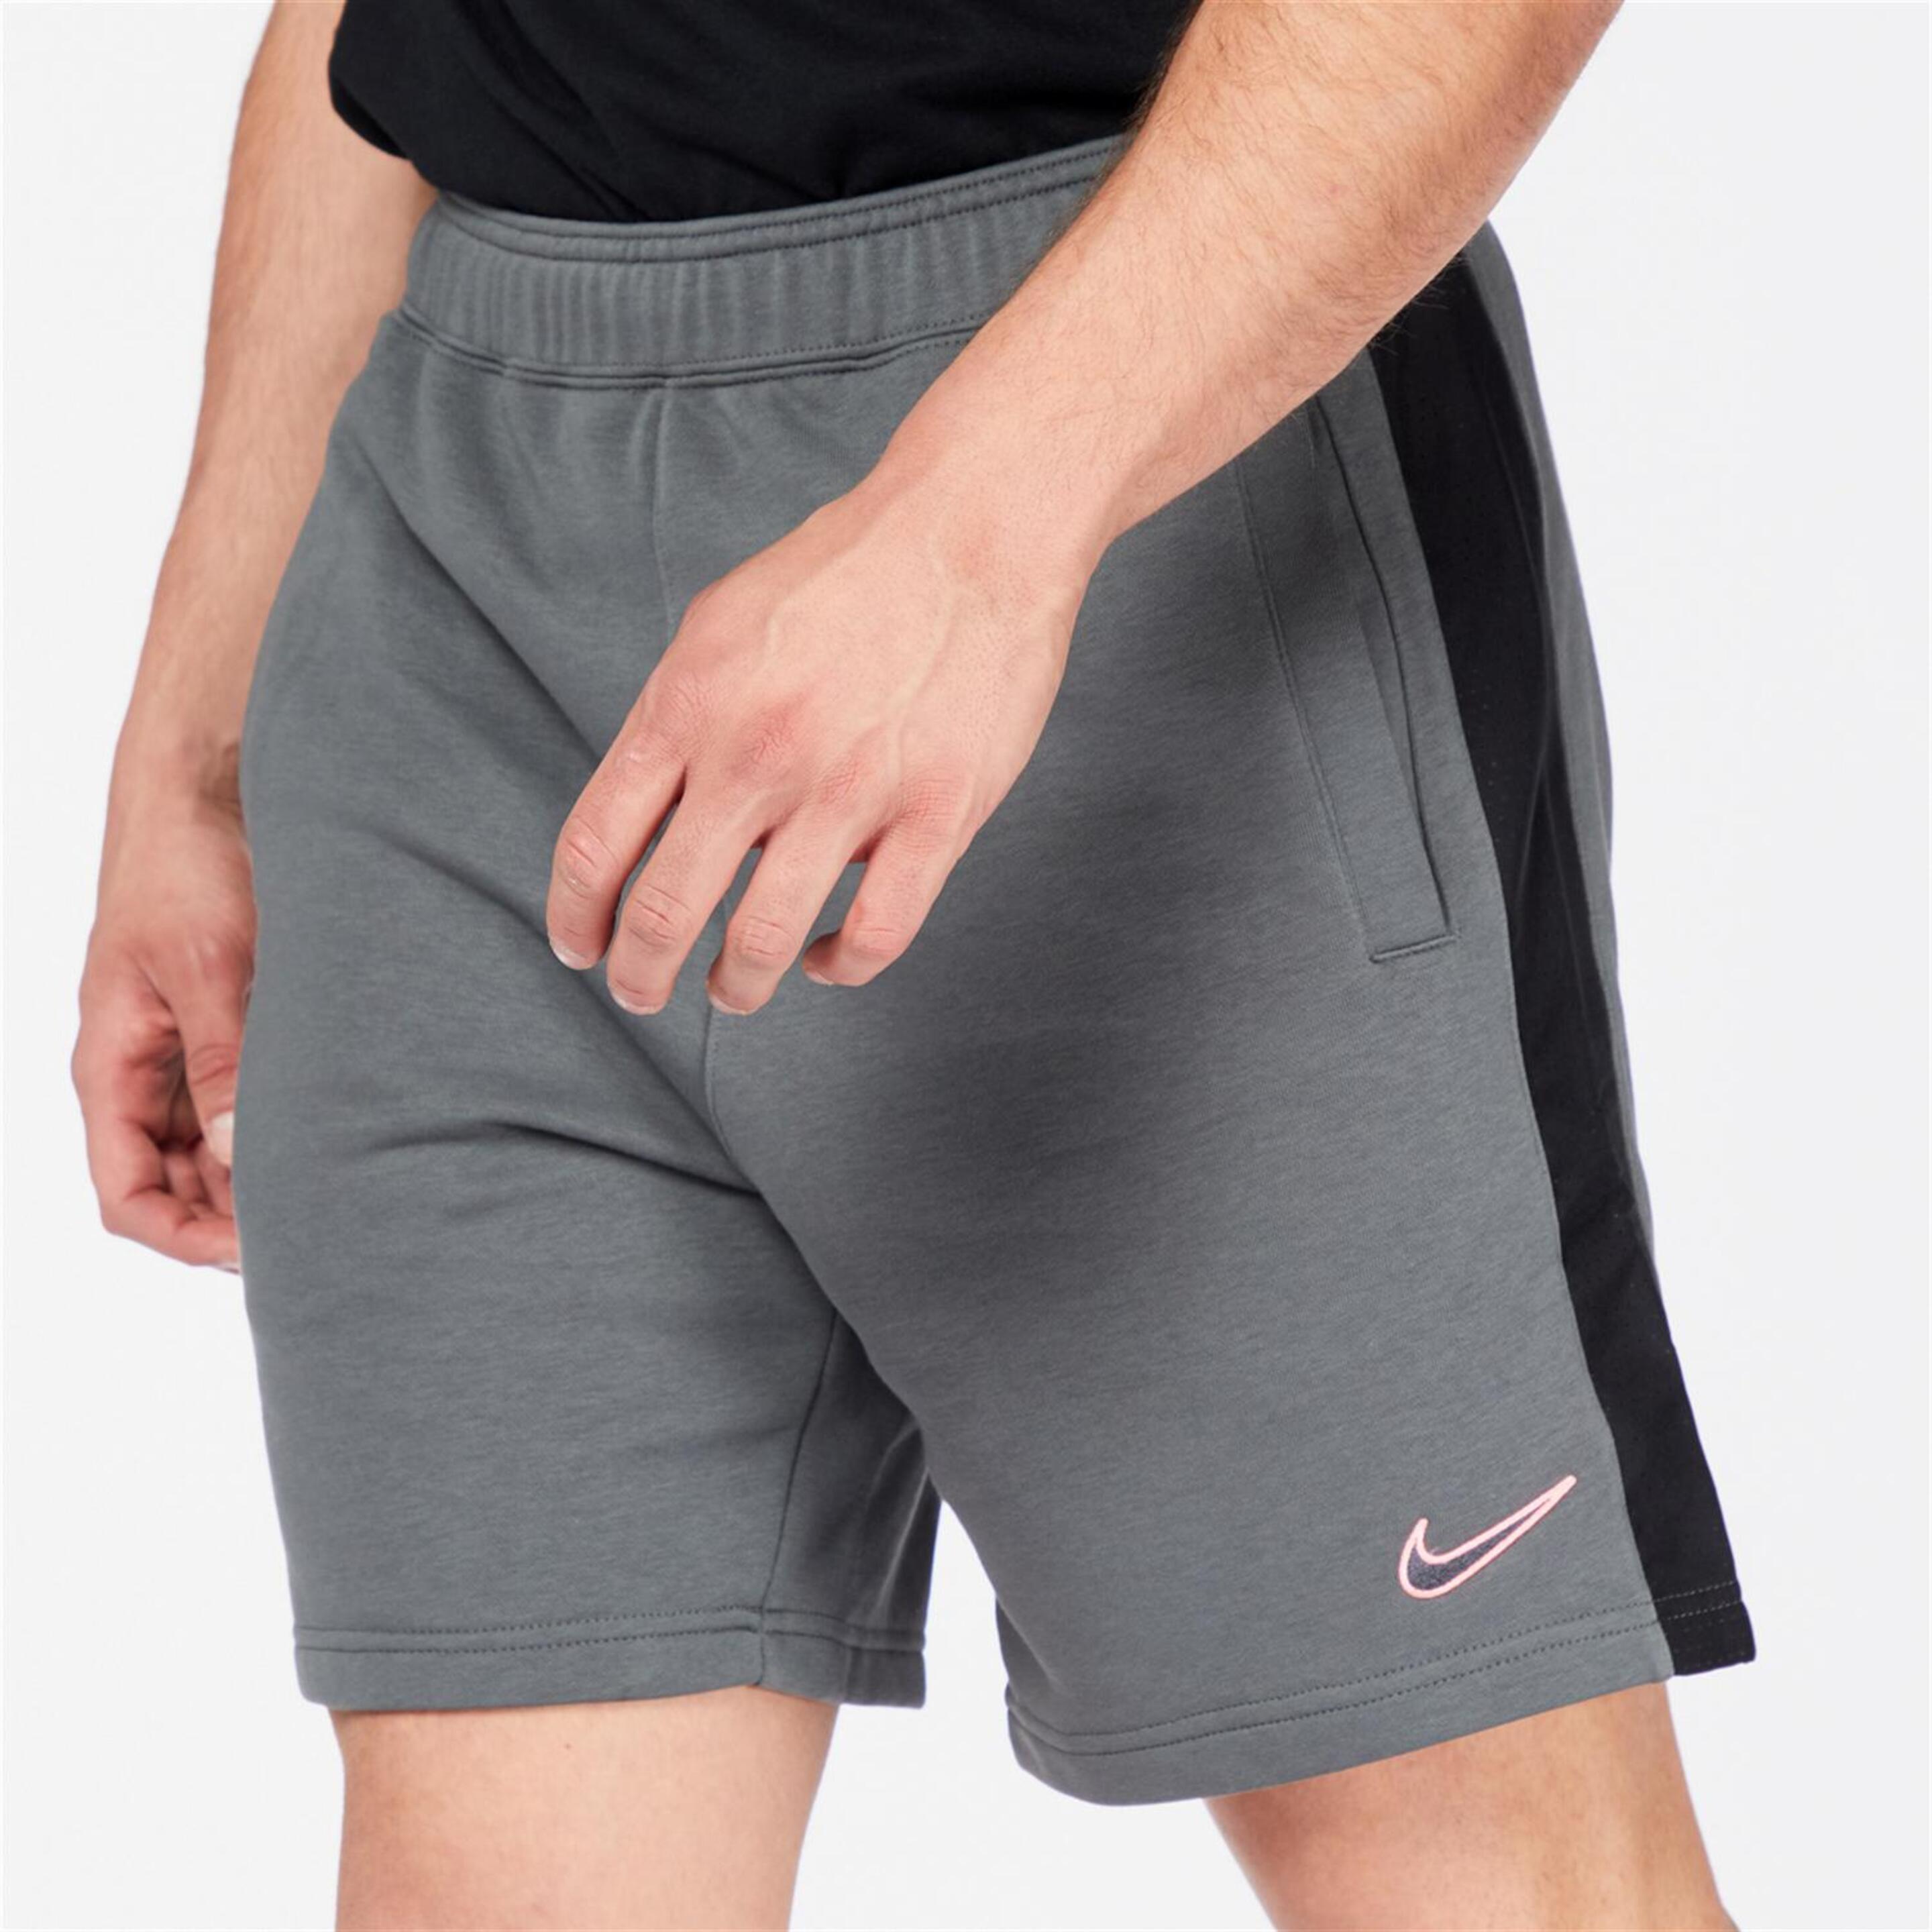 Nike Sp - gris - Pantalón Corto Hombre